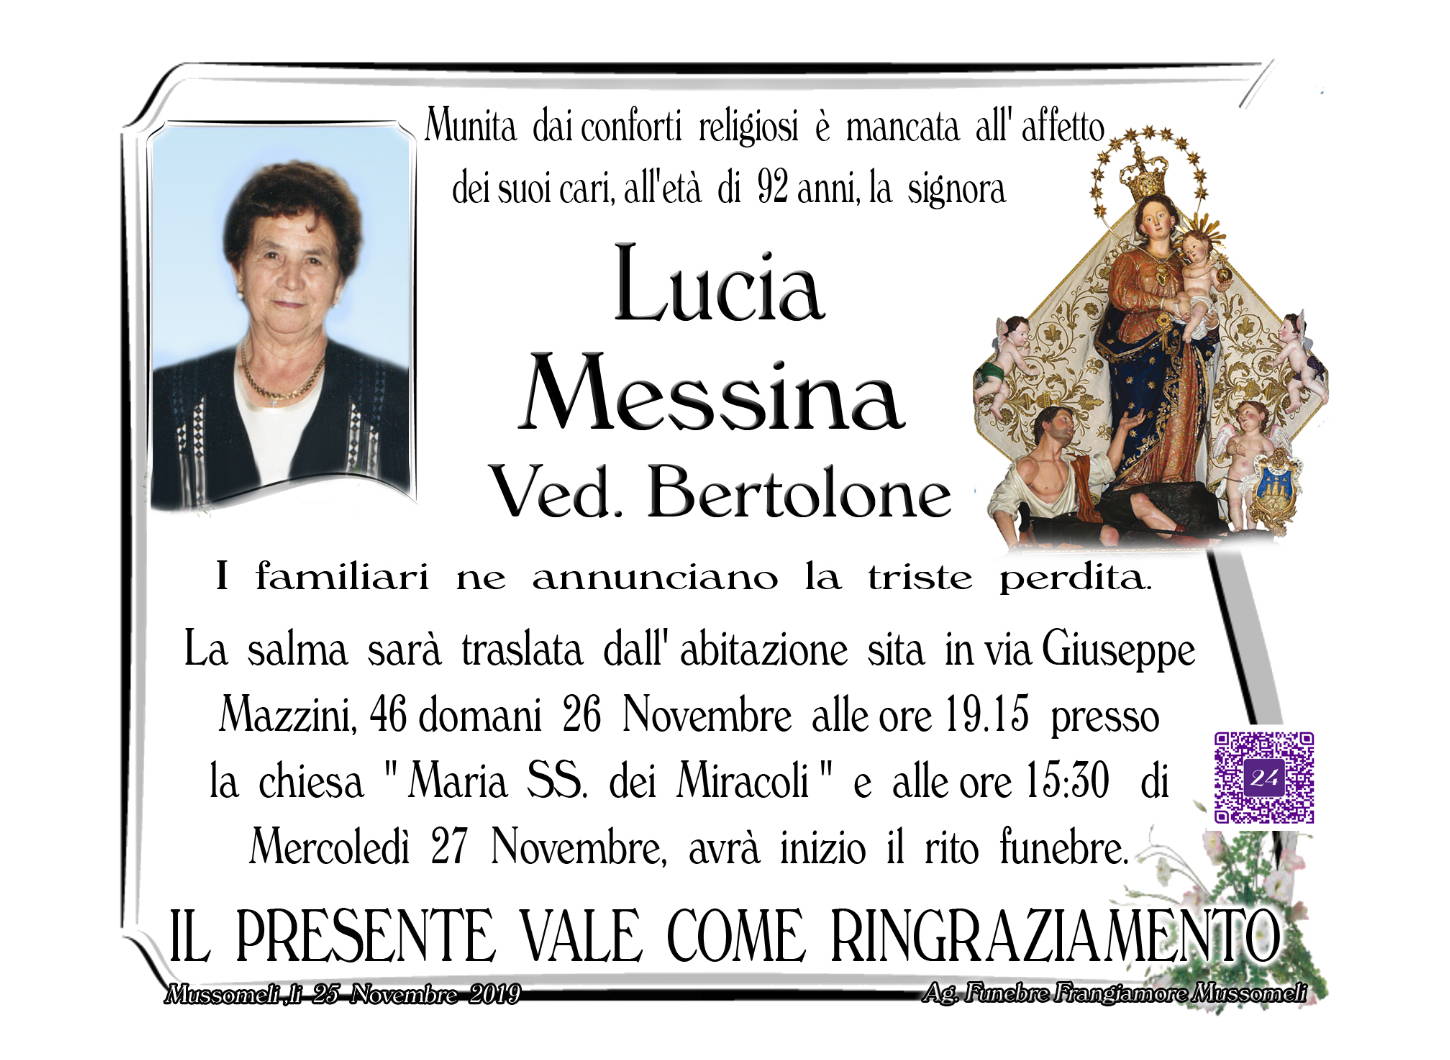 Lucia Messina